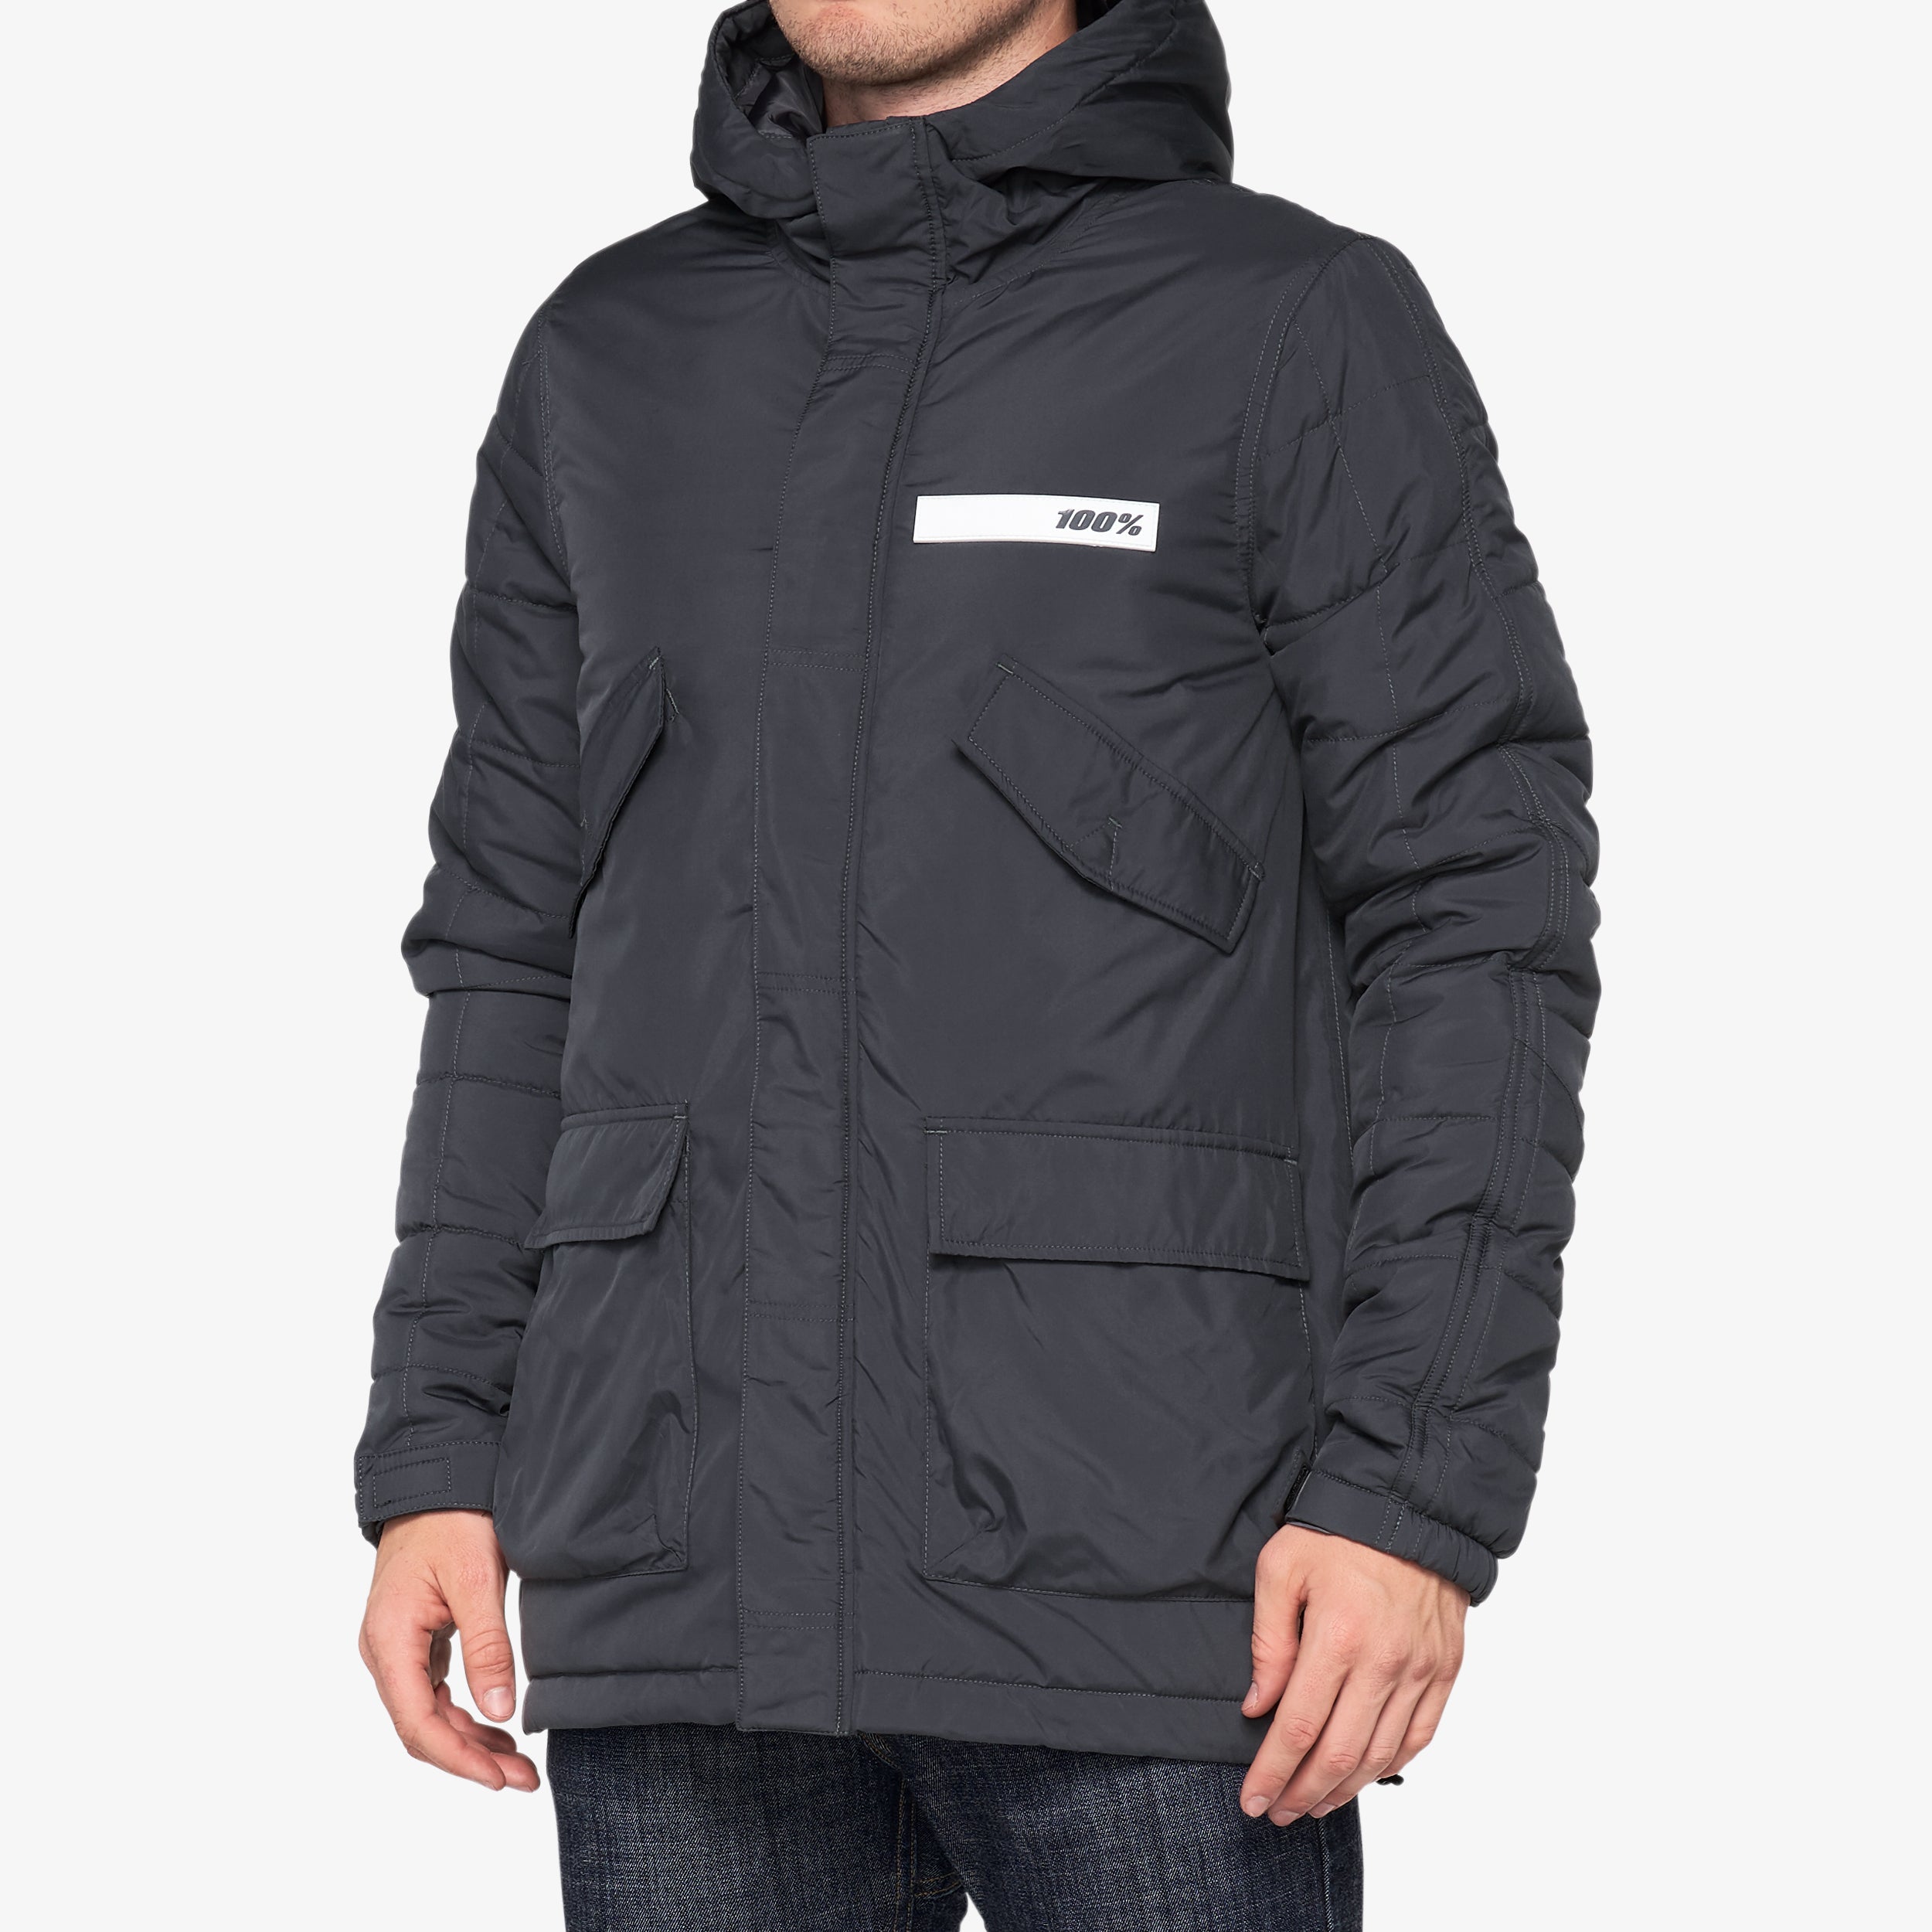 TYRO Hooded Zip Jacket Charcoal